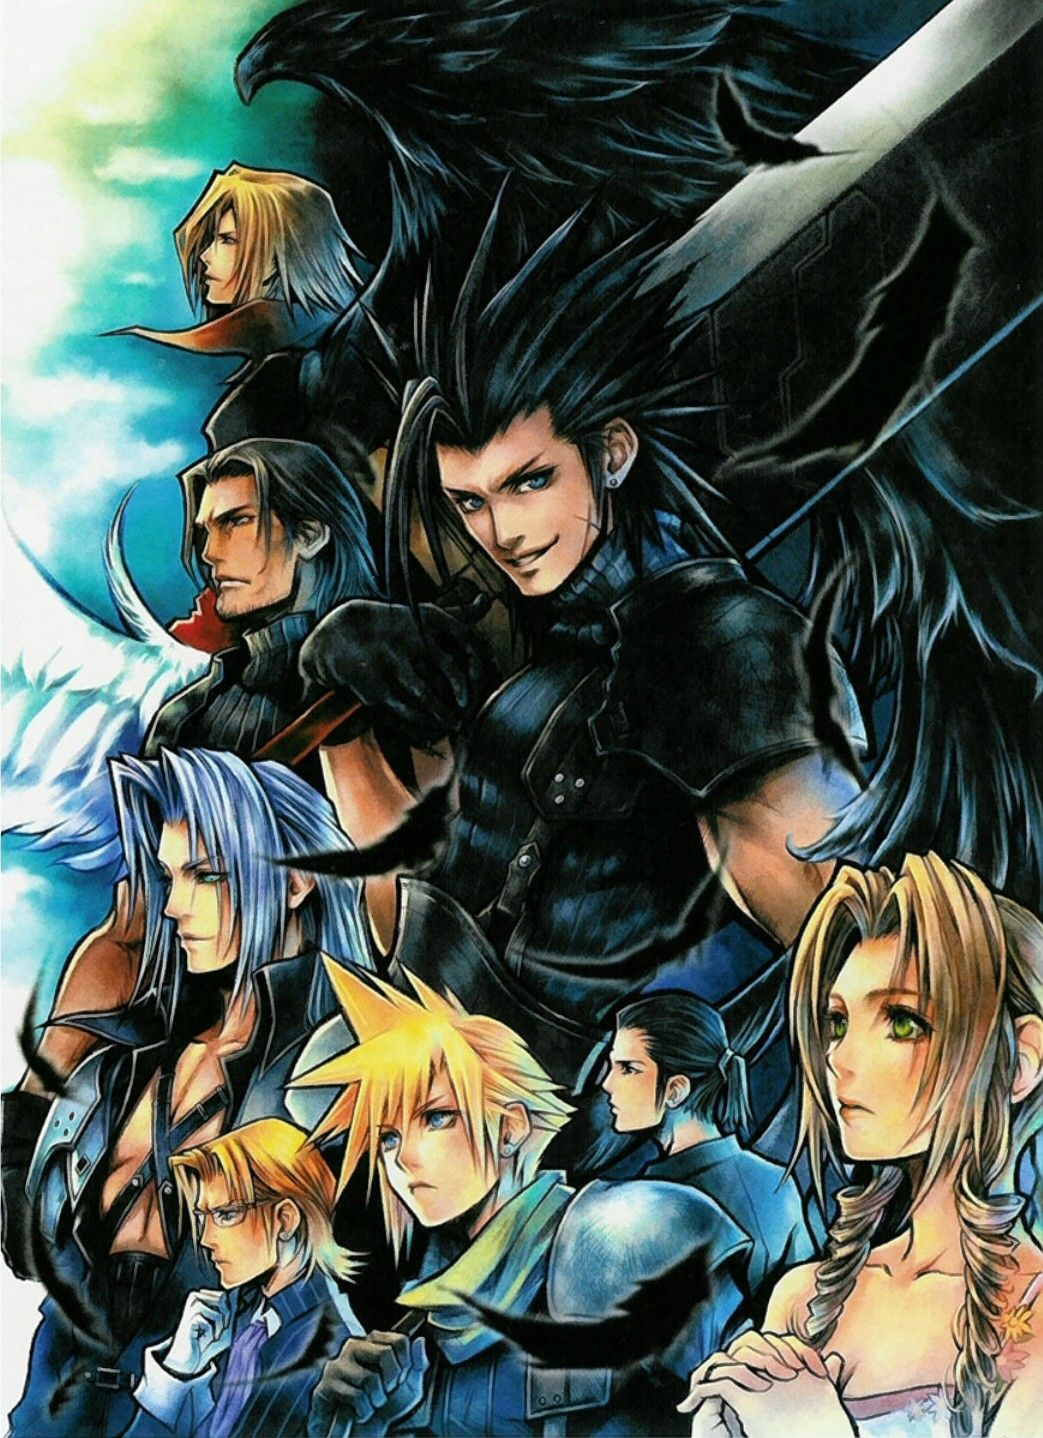 Genesis Rhapsodos Core: Final Fantasy VII